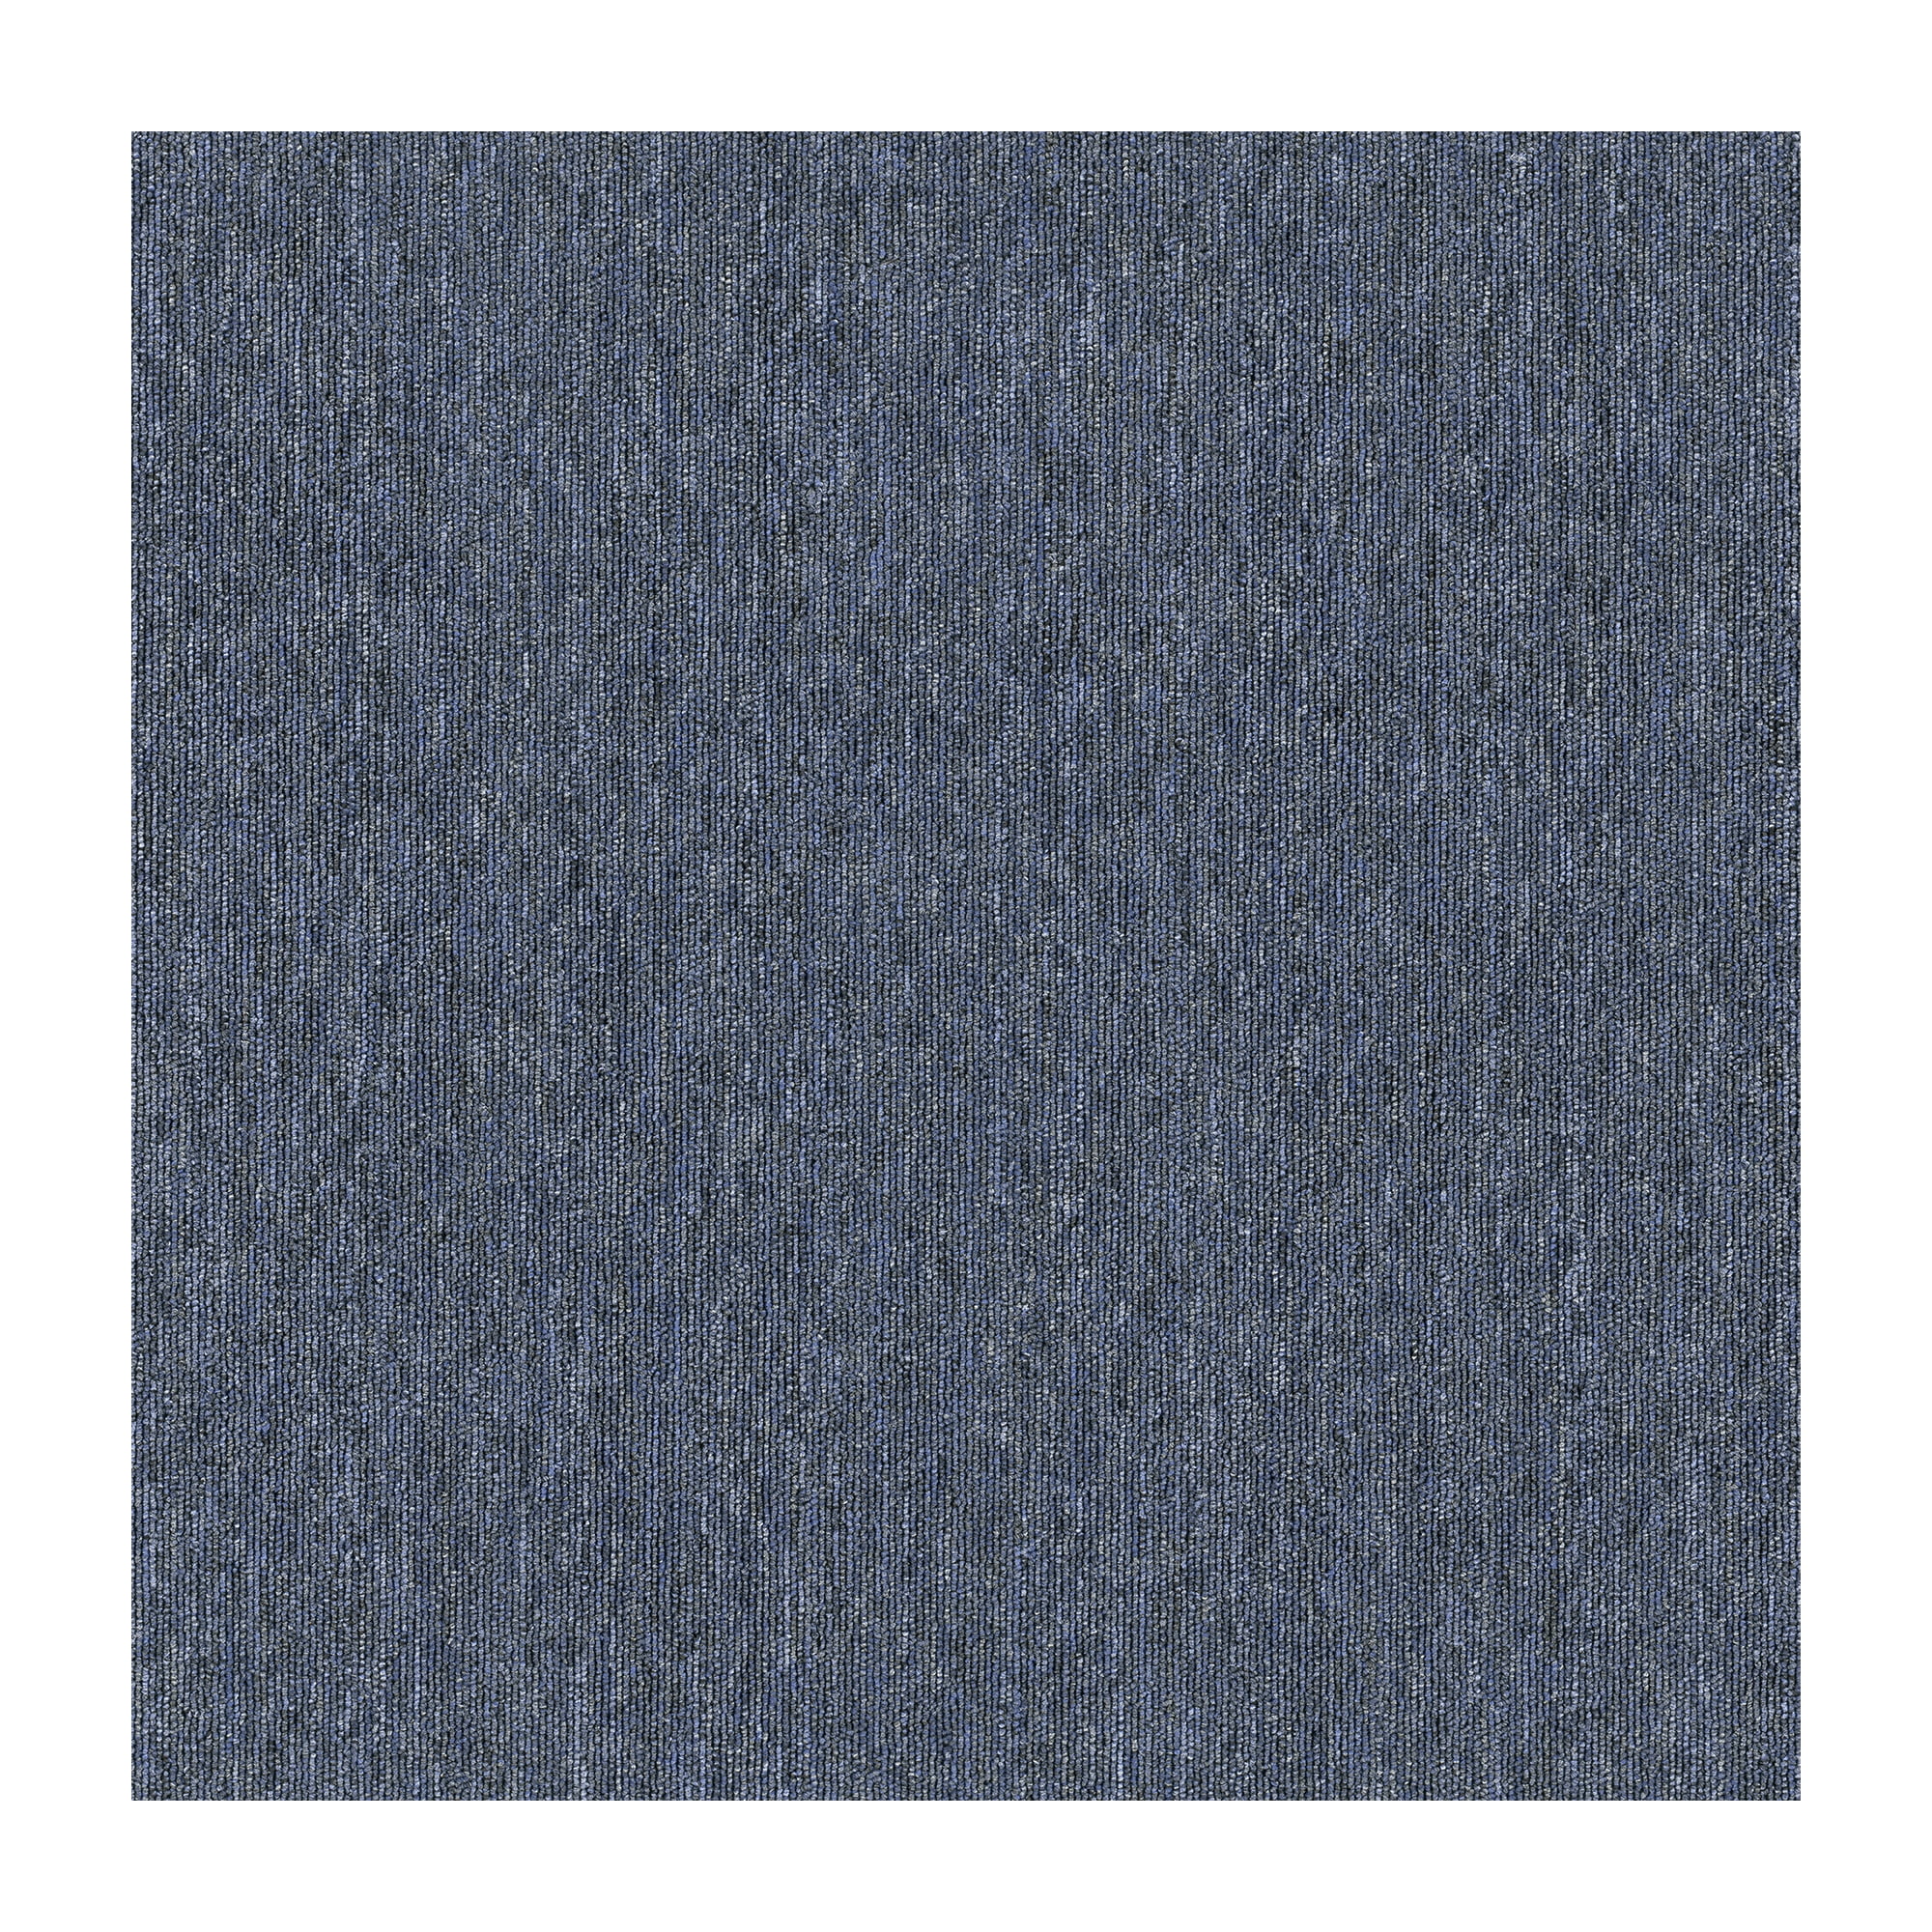 Mohawk EQ301-979 Basics 24 x 24 Carpet Tile with Envirostrand Pet Fibe